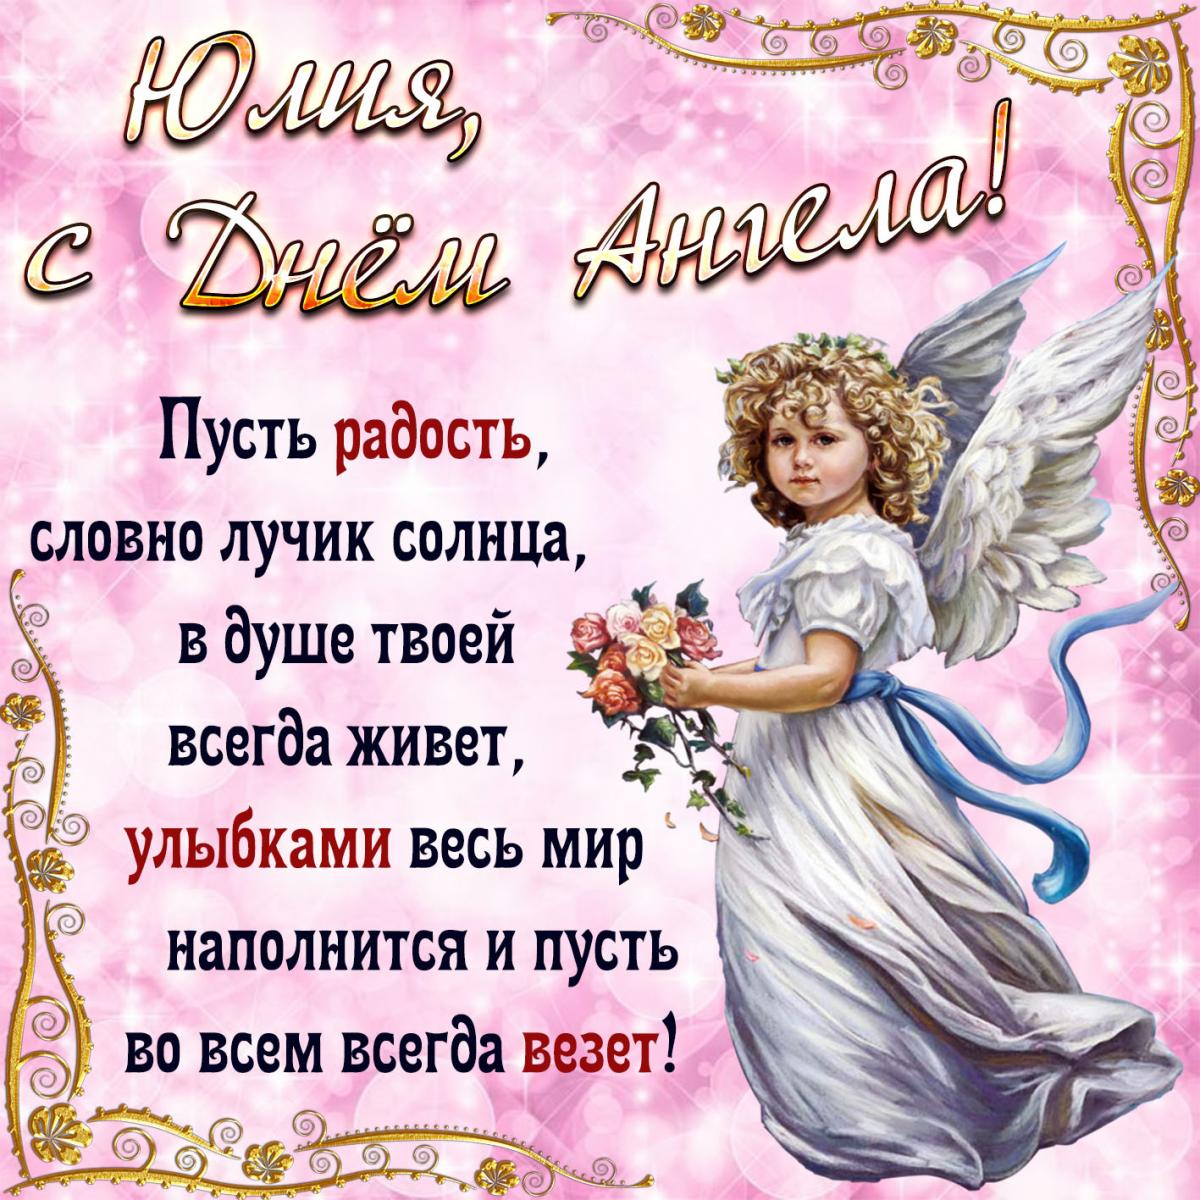 14 ноября именины, день ангела у Юлии, Ульяны, Юлианы, Иулиании: поздравления, открытки, красивые стихи и пожелания в день ангела